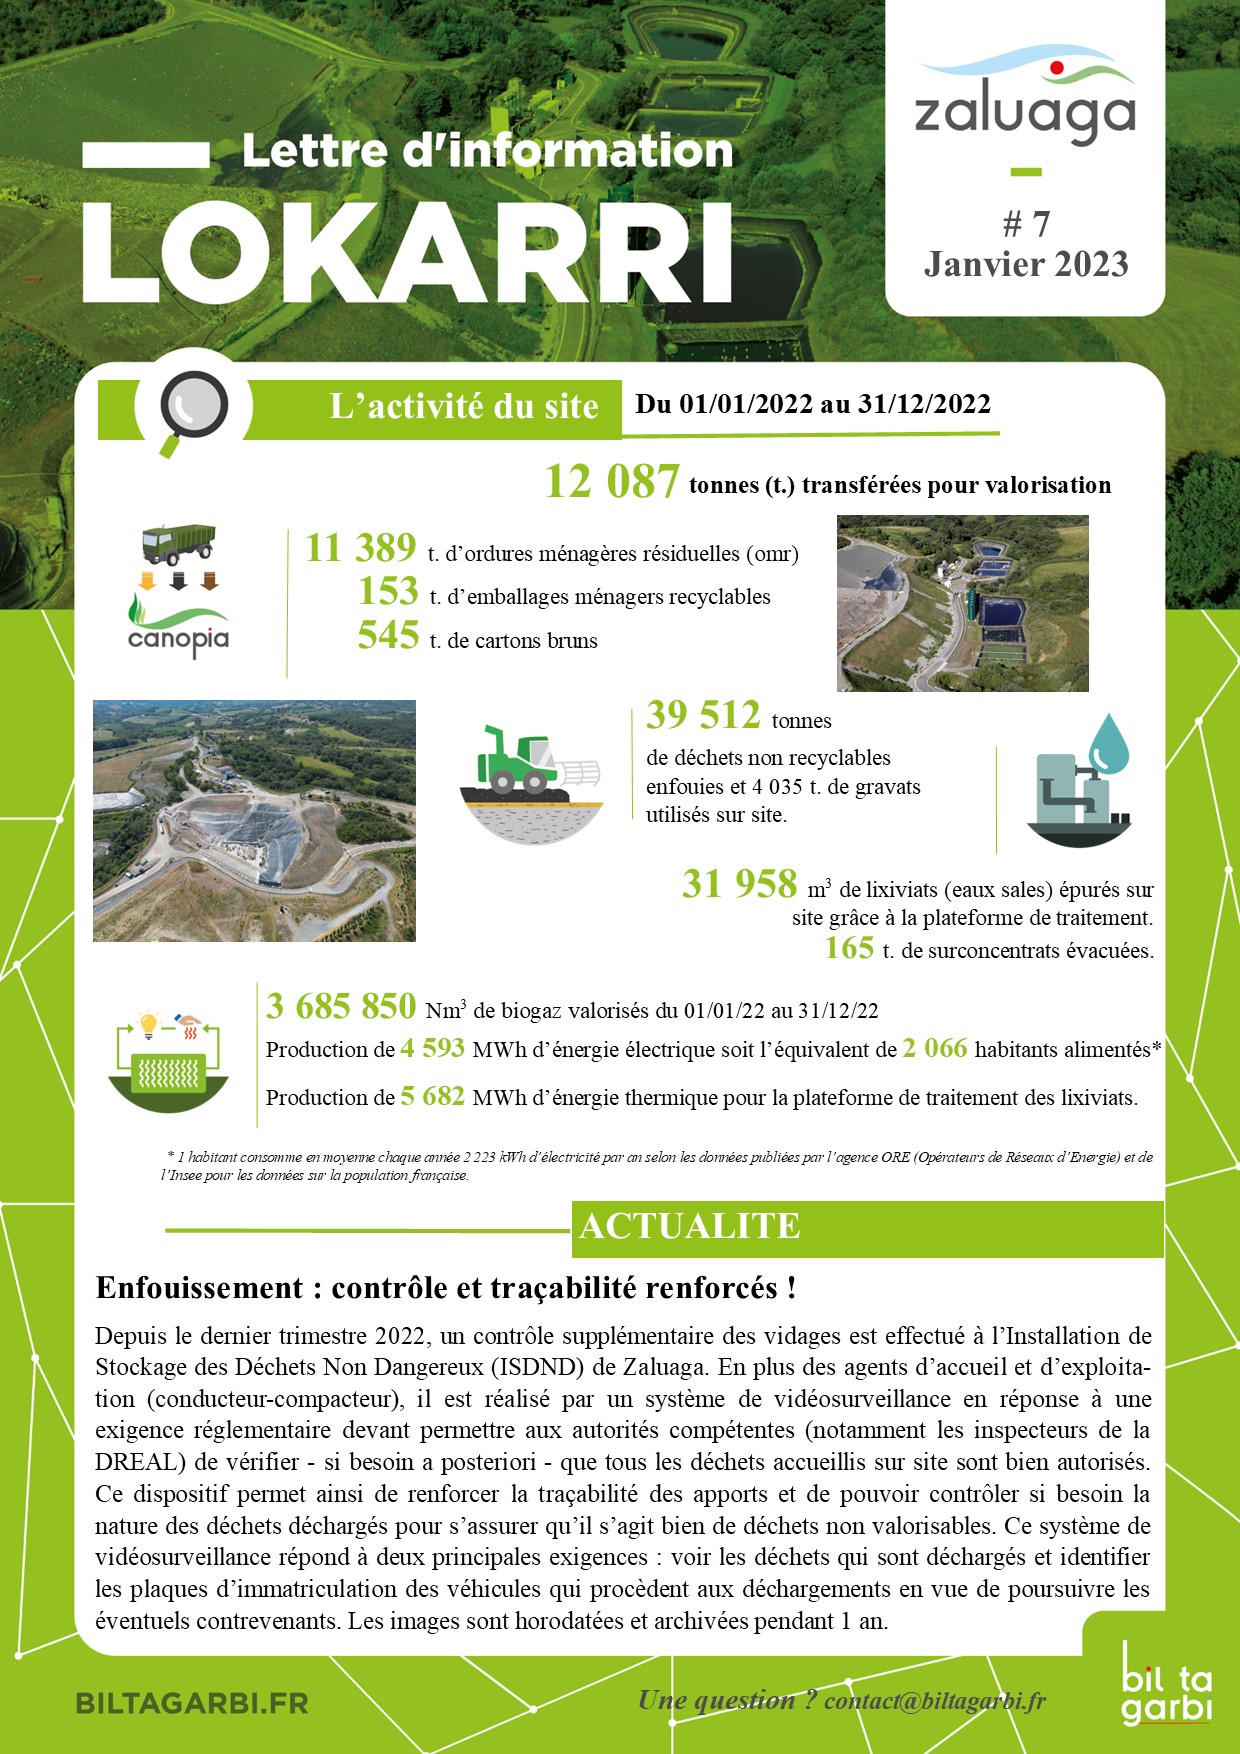 Capture d'écran du document Lokarri - image décorative